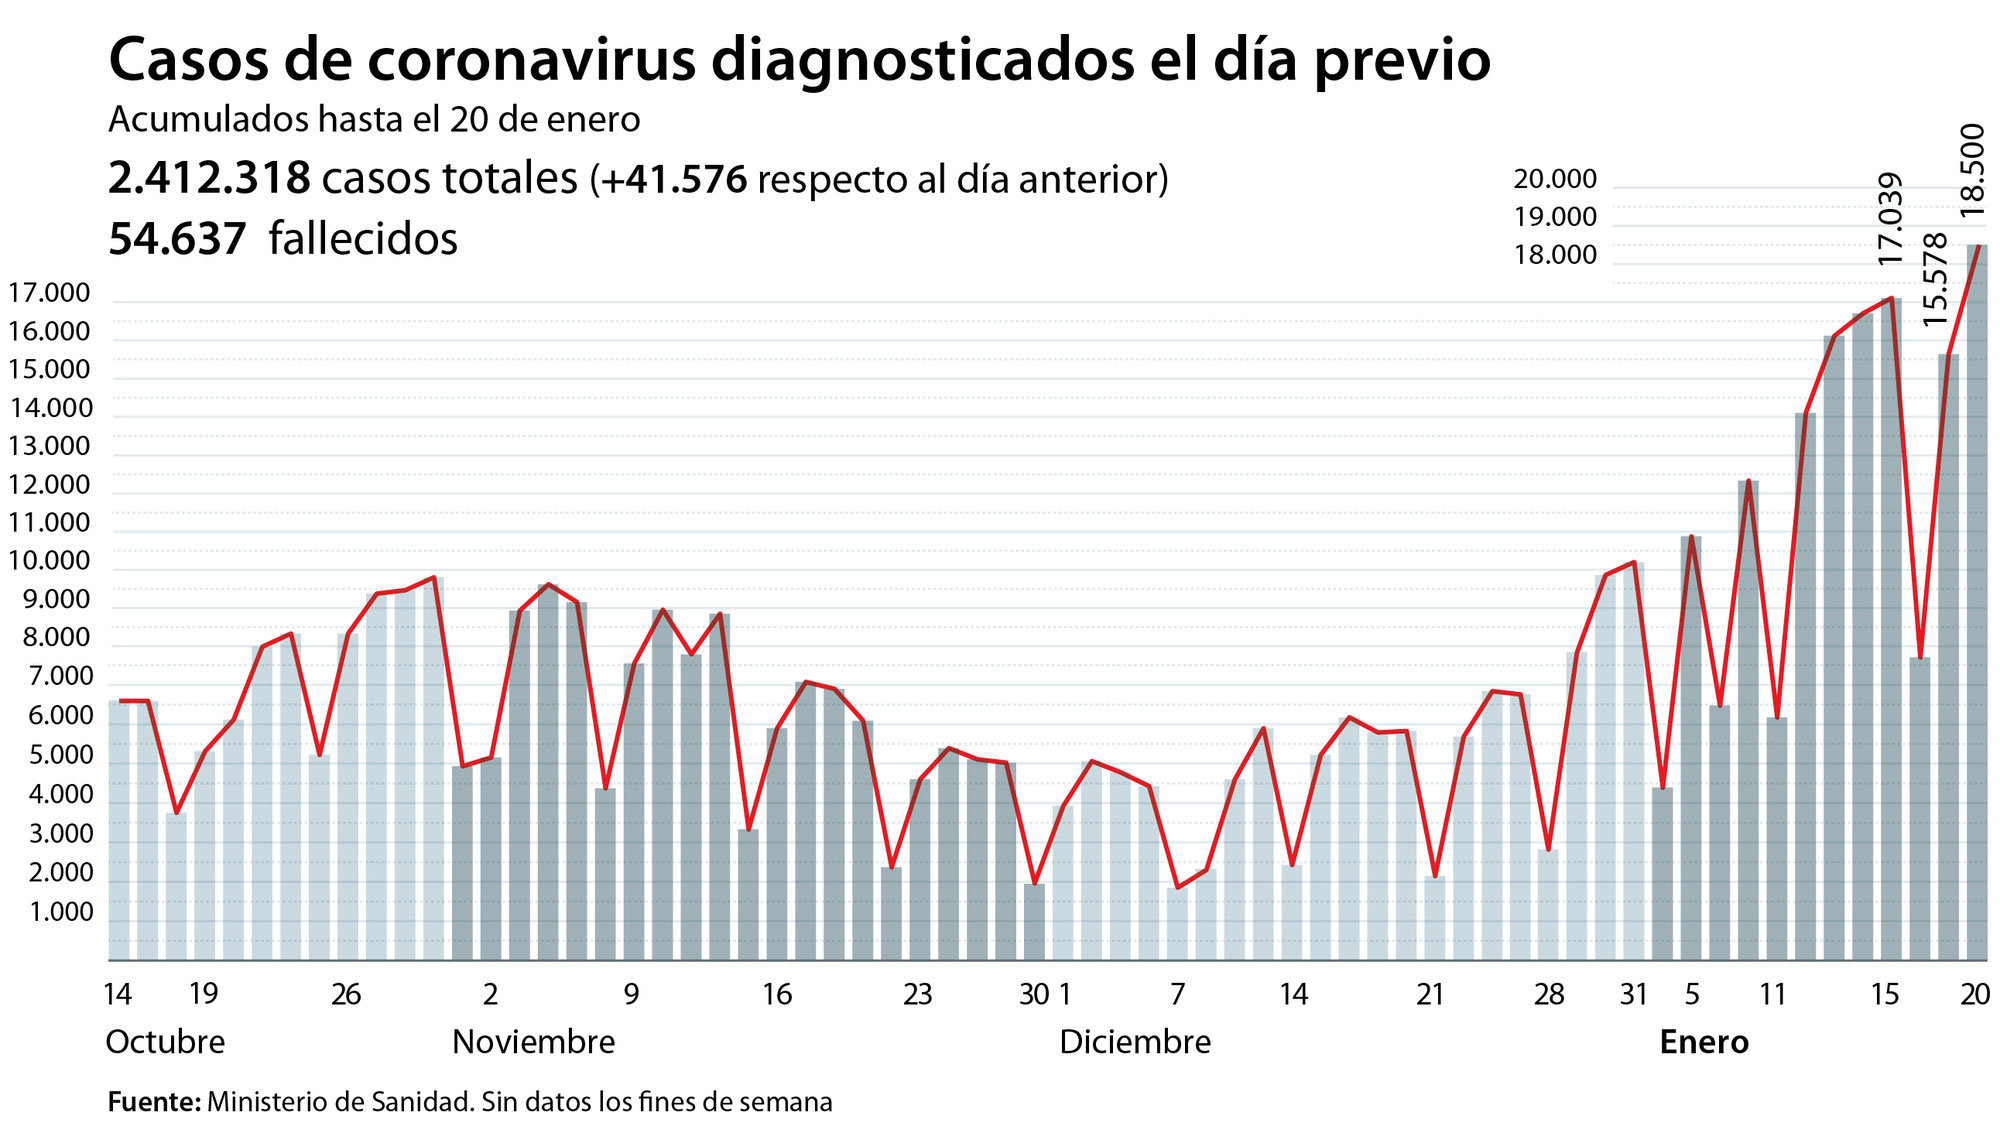 Третья волна пандемии в Испании продолжает ставить "рекорды"